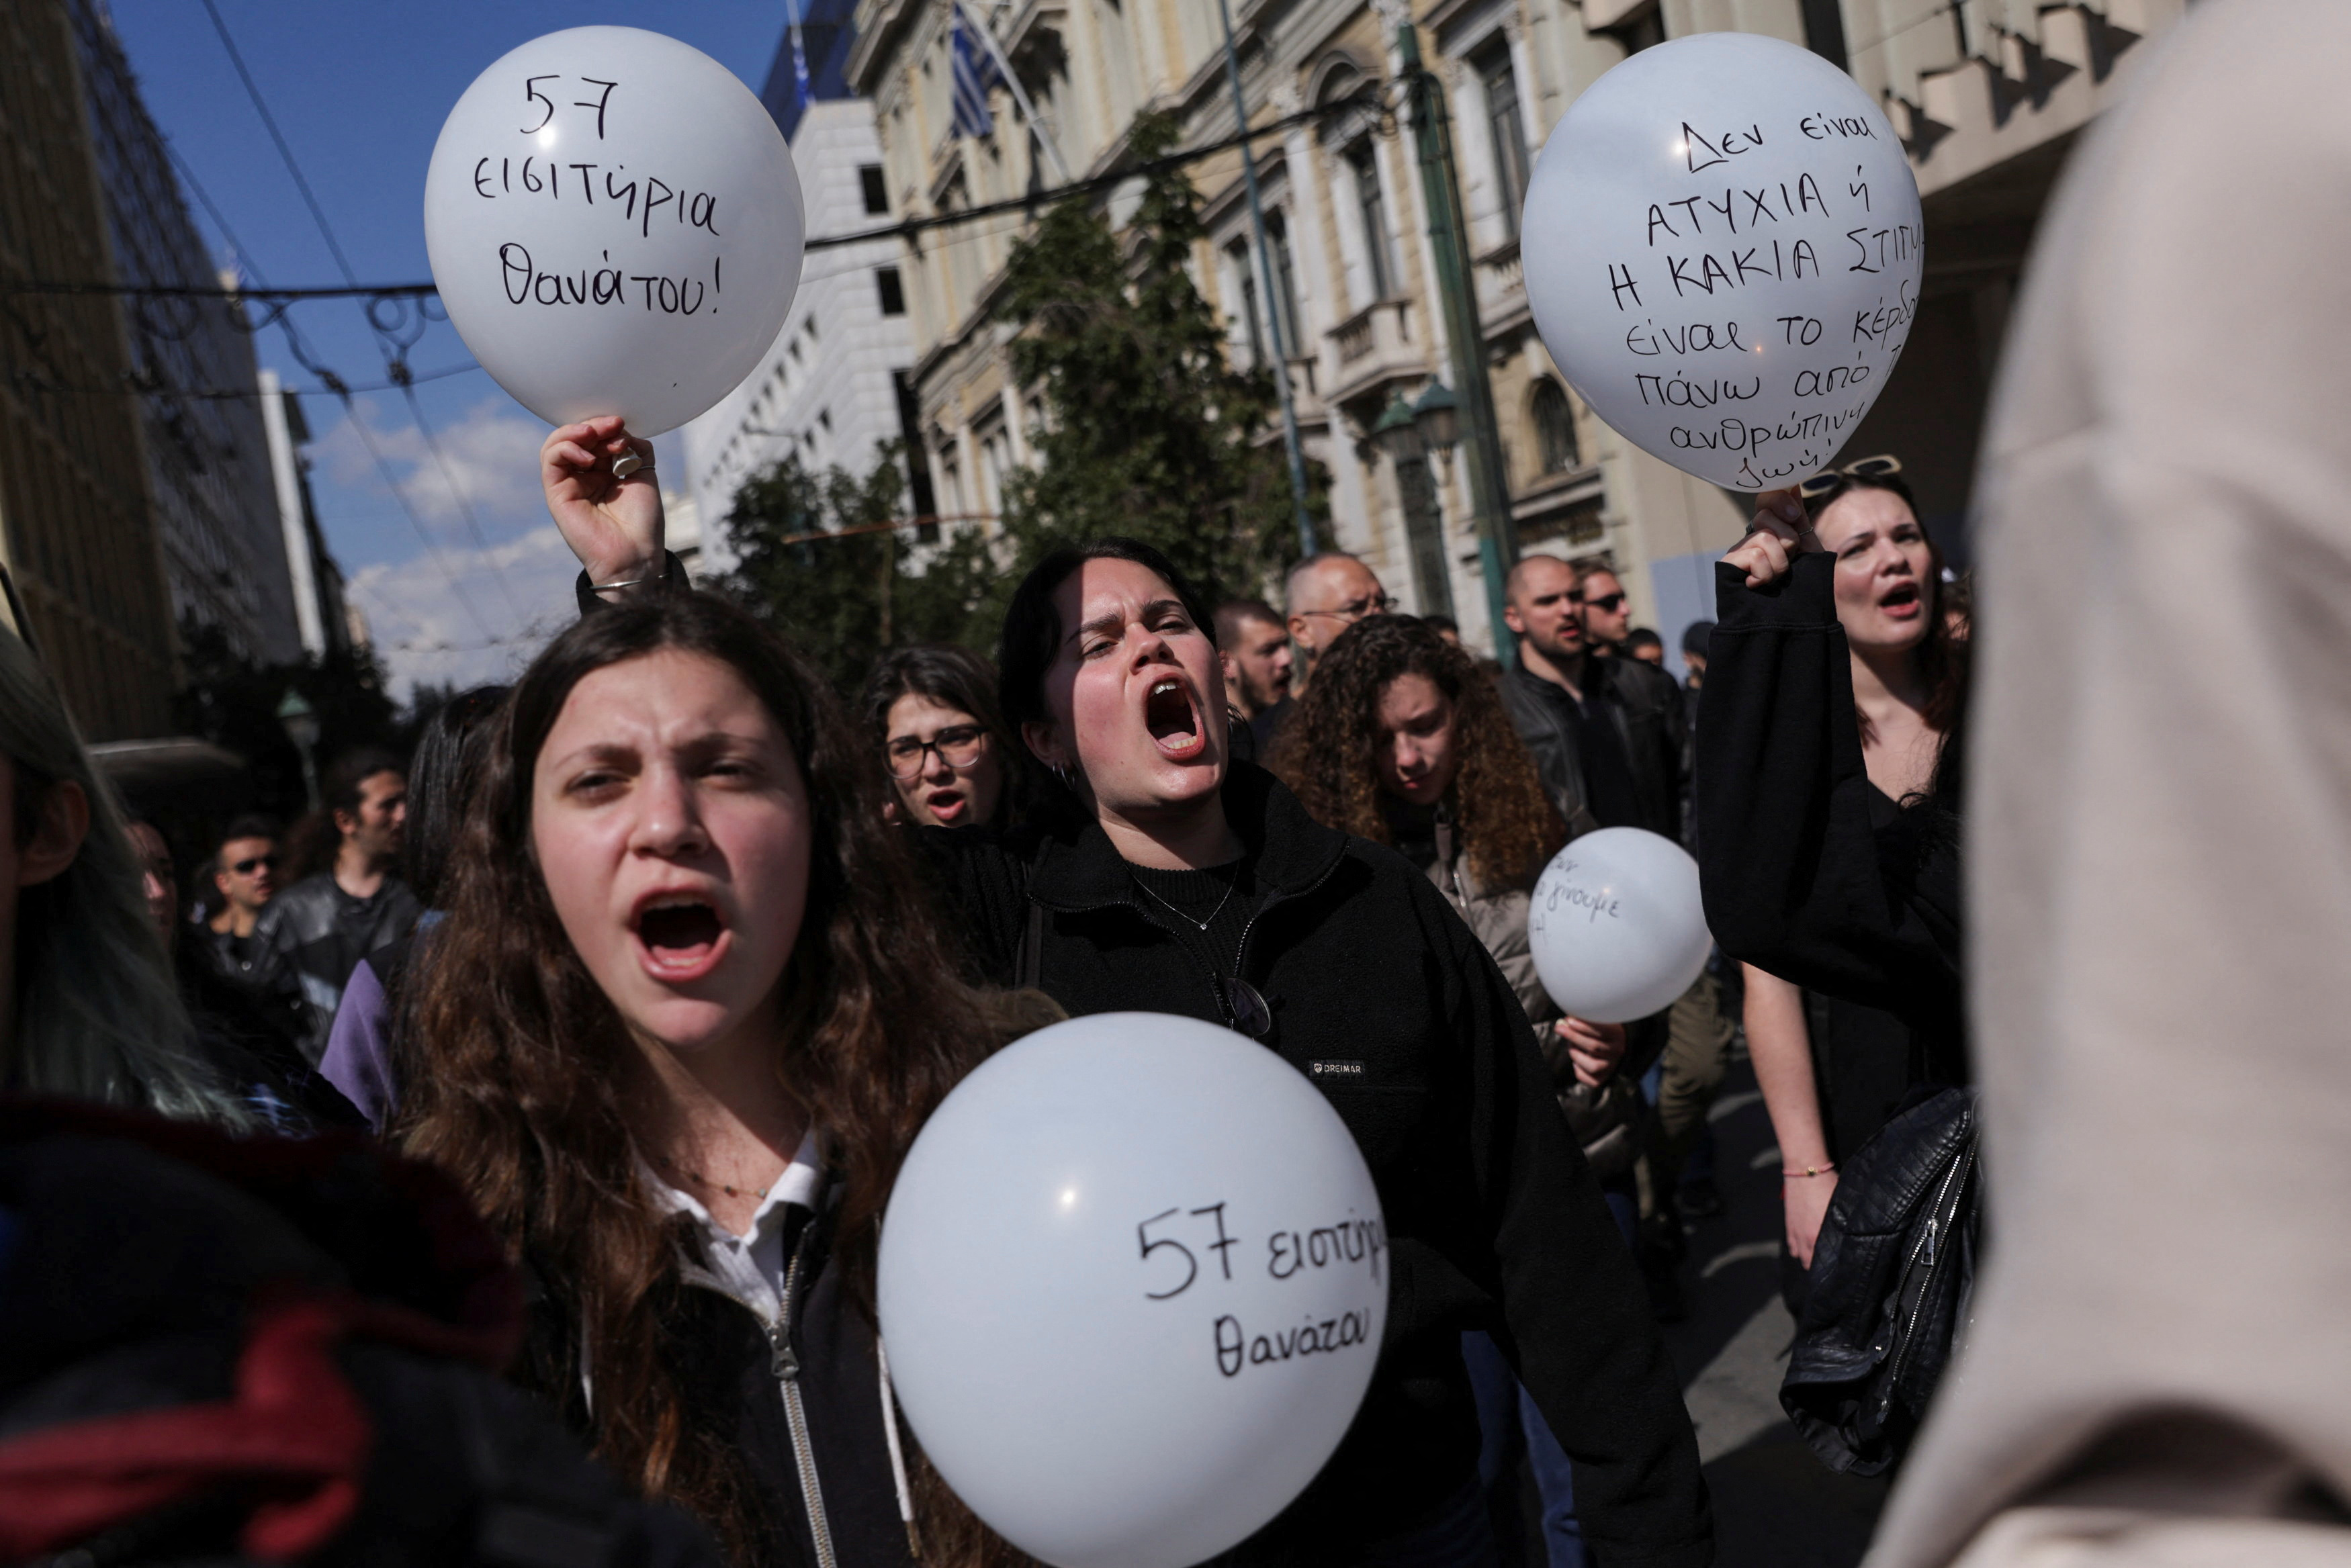 Un gurpo de estudiantes alzó globos blancos en memoria de las 57 víctimas del choque (REUTERS)